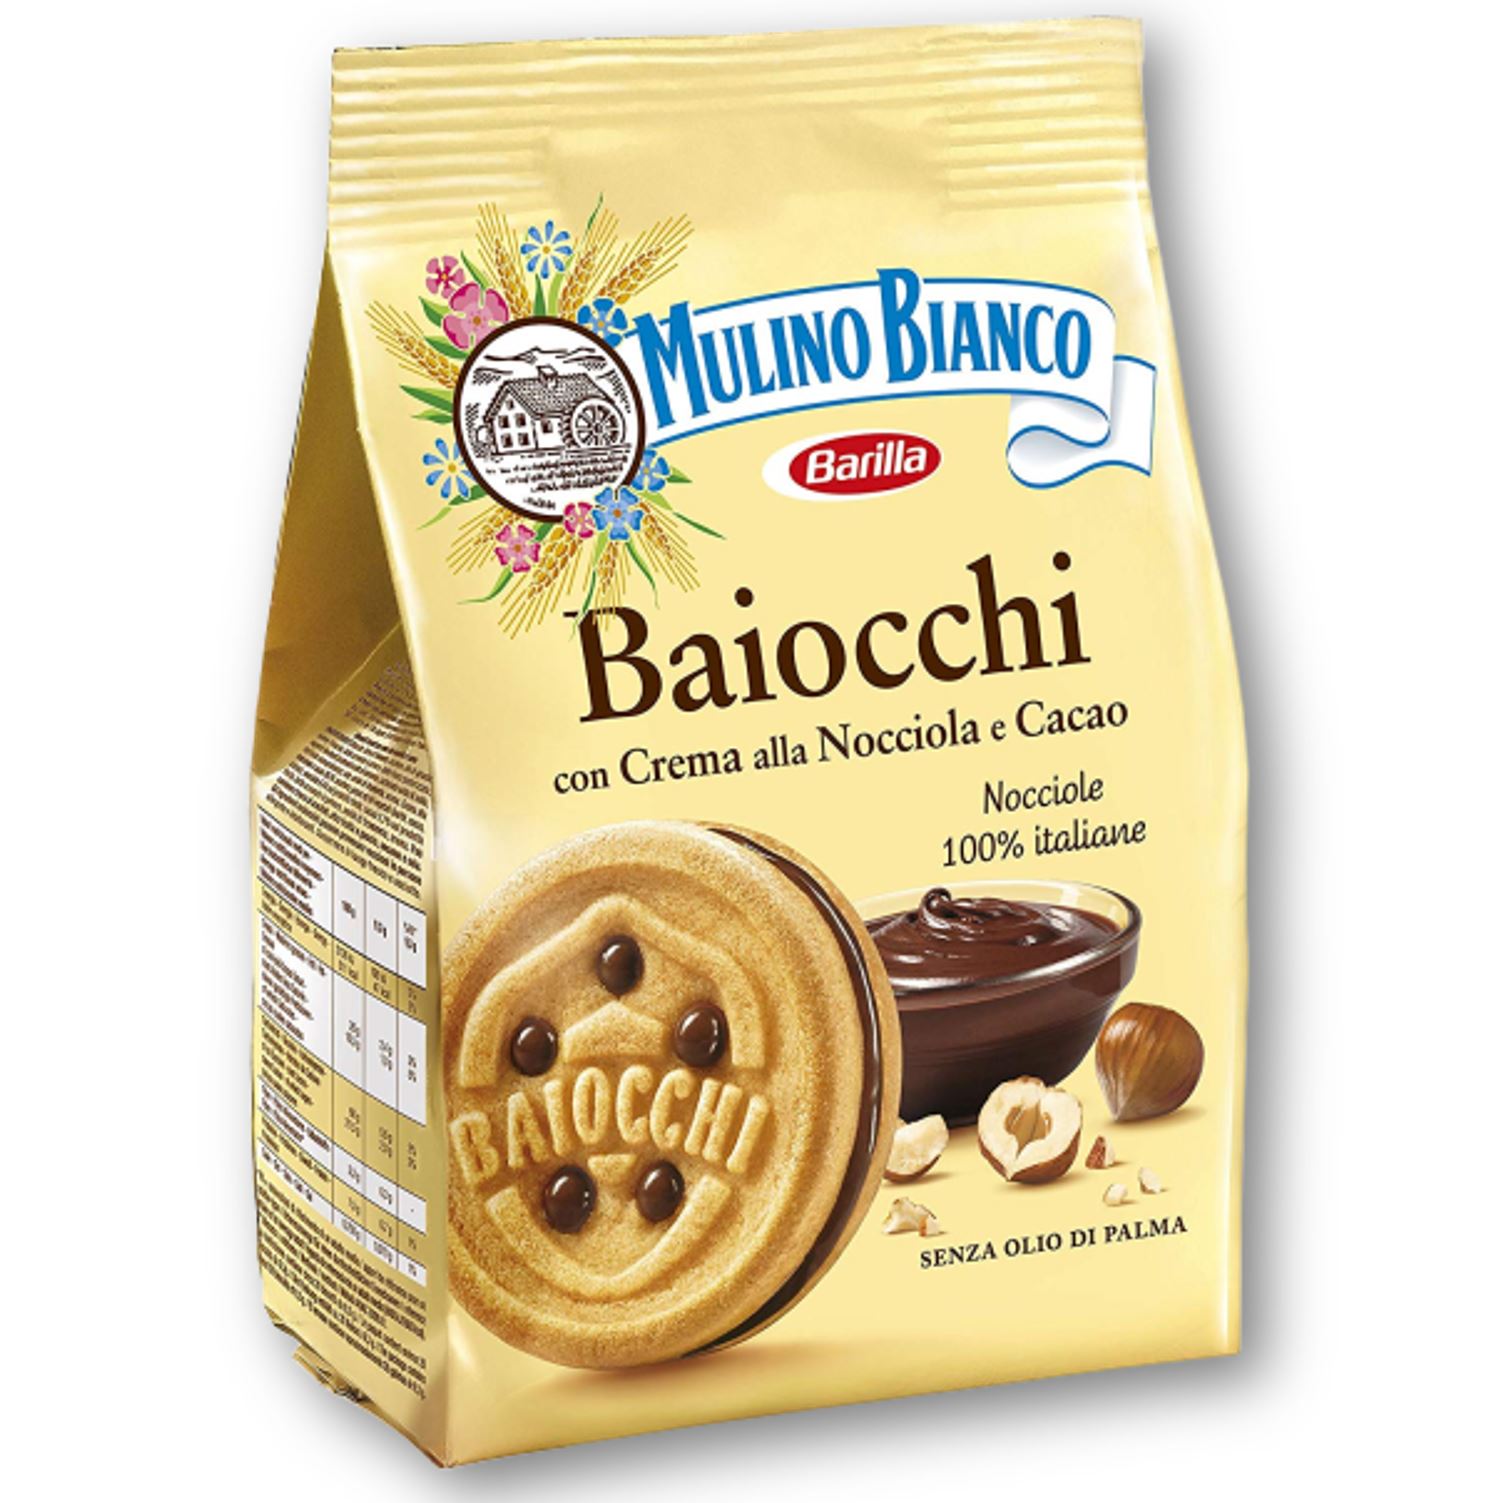 Biscuits Baiocchi Mulino Bianco